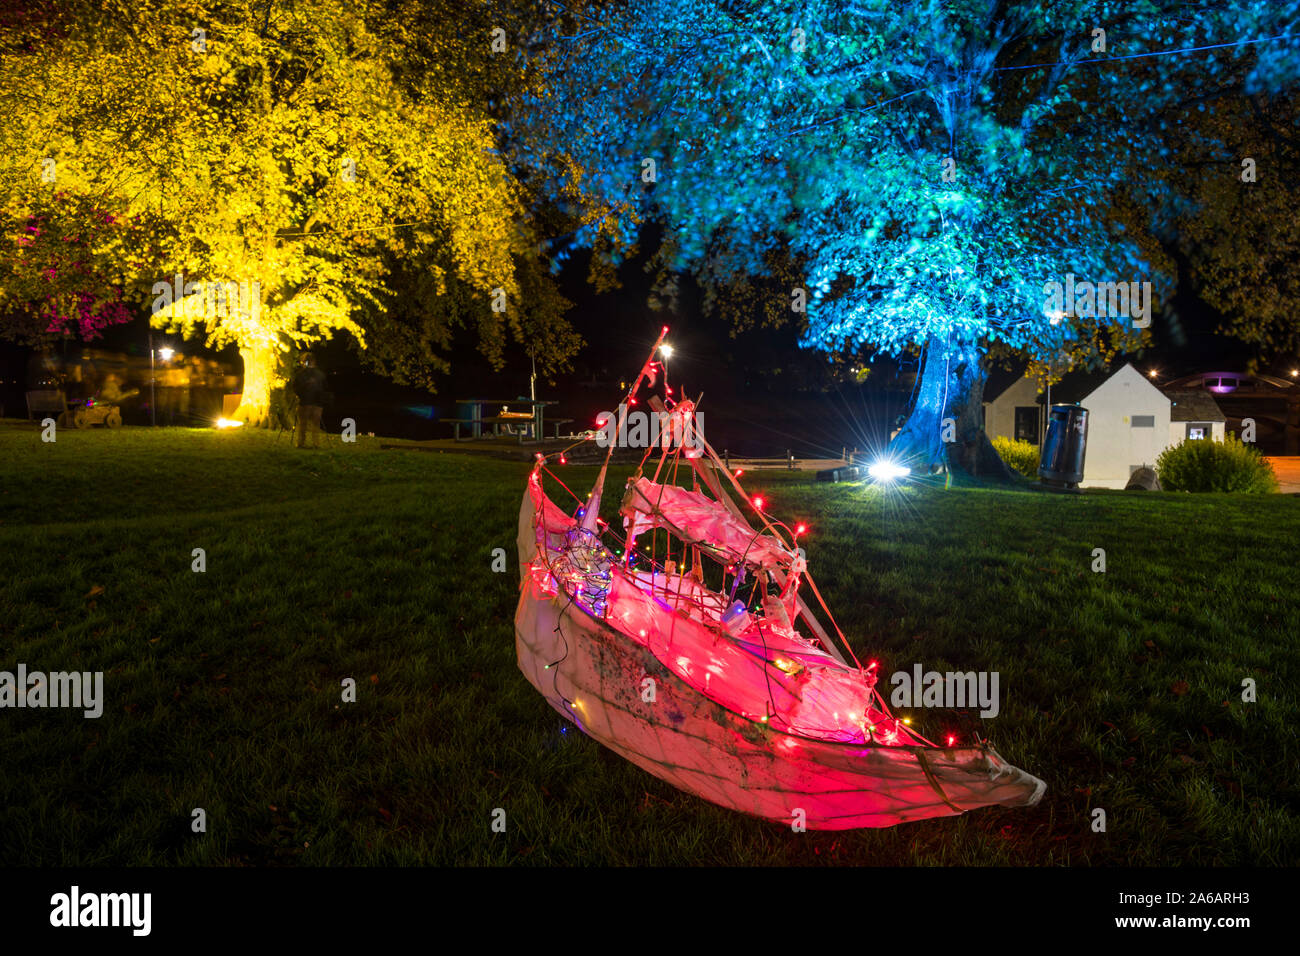 Farol de barco pesquero y árboles iluminados en el Festival de la luz Kirkcudbright, Dumfries y Galloway, Escocia Foto de stock